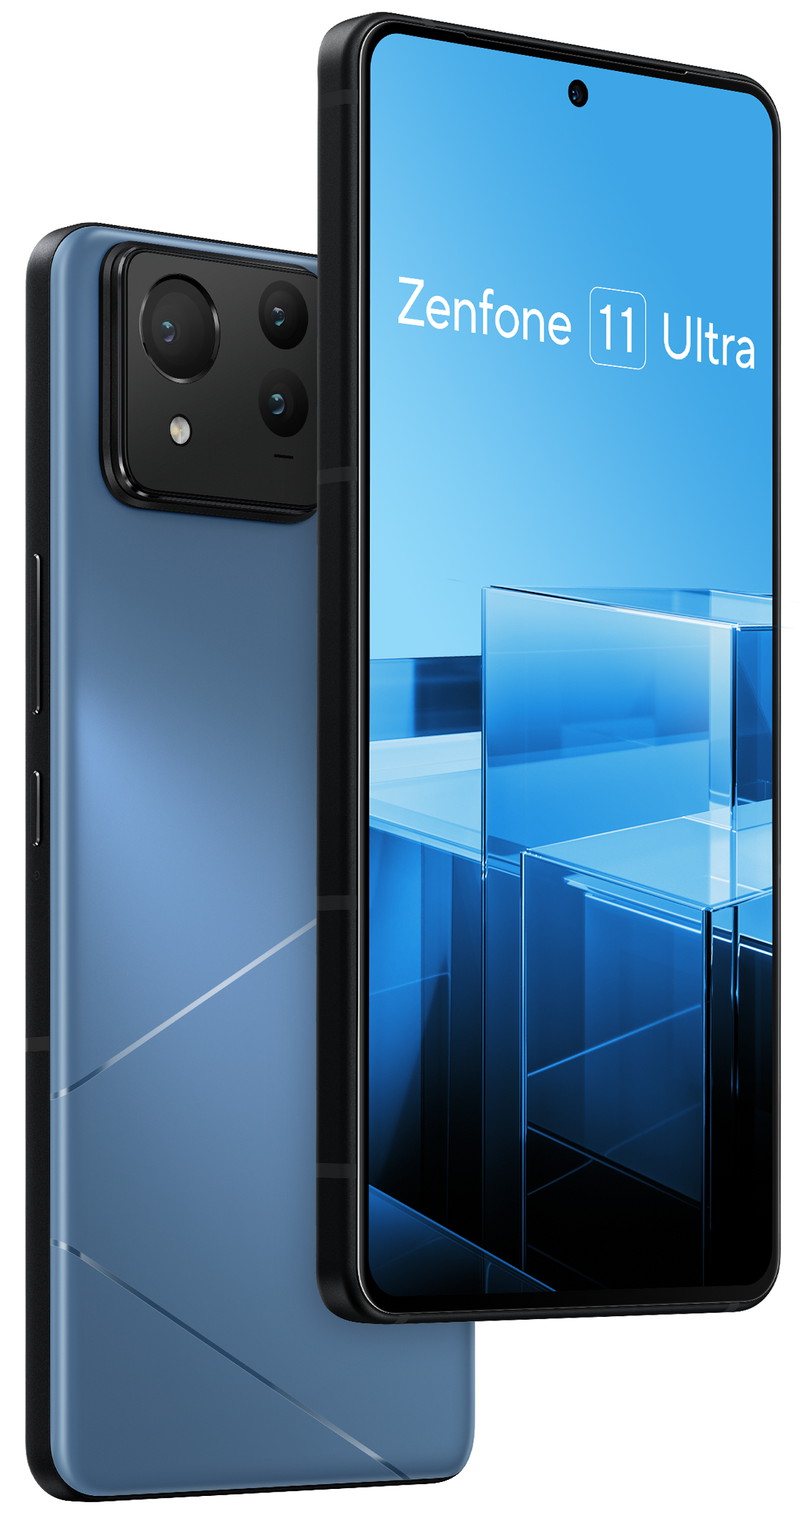 ASUS Zenfone 11 Ultra display